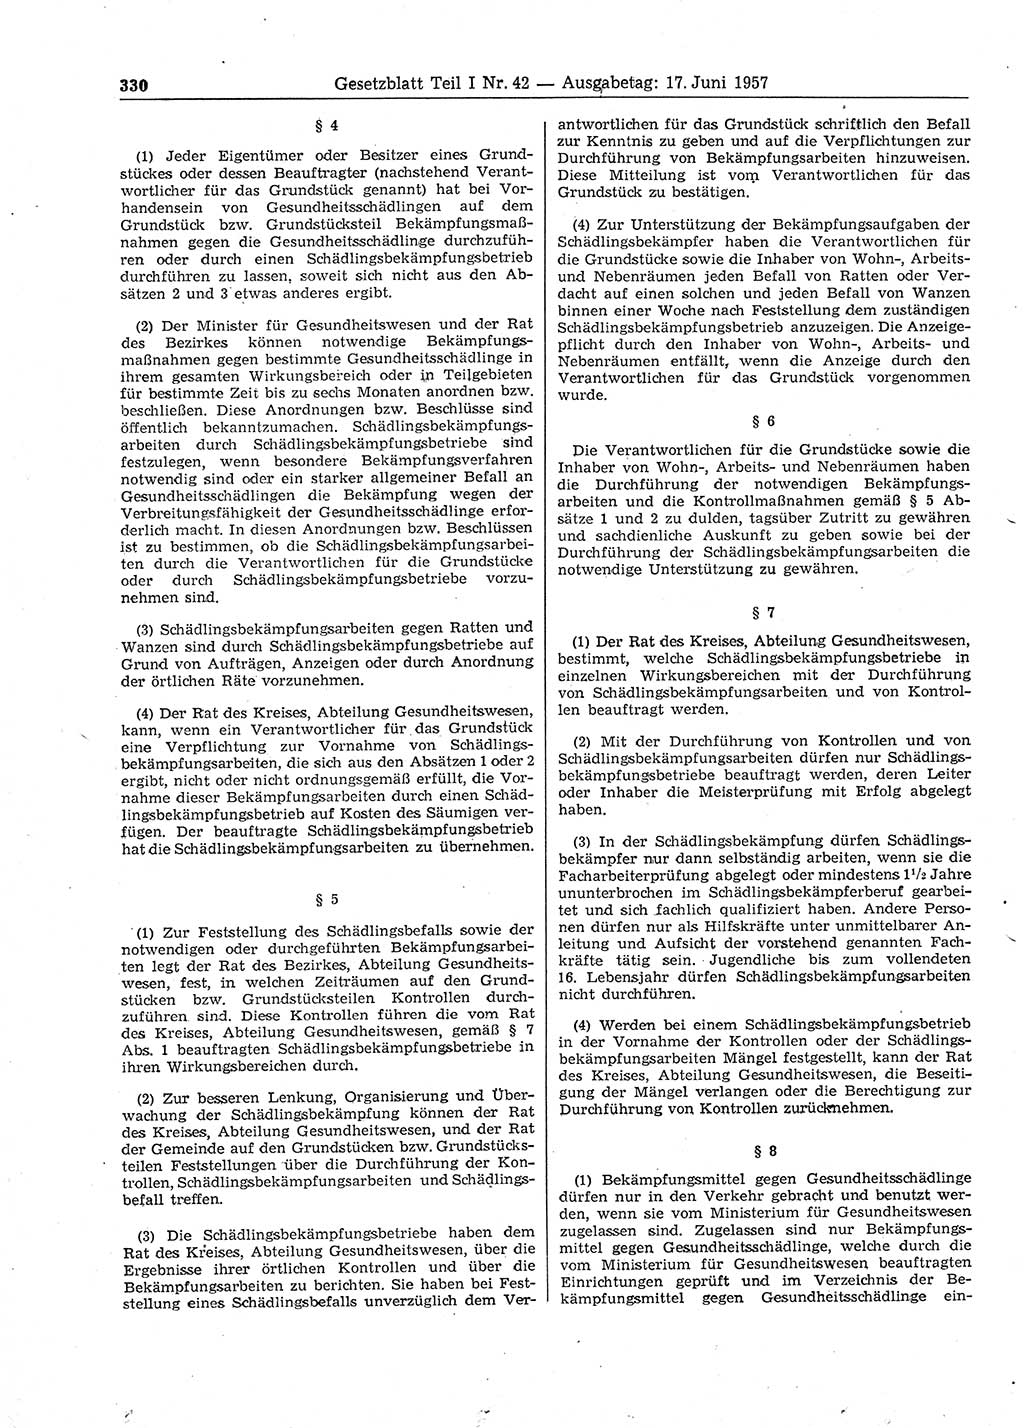 Gesetzblatt (GBl.) der Deutschen Demokratischen Republik (DDR) Teil Ⅰ 1957, Seite 330 (GBl. DDR Ⅰ 1957, S. 330)